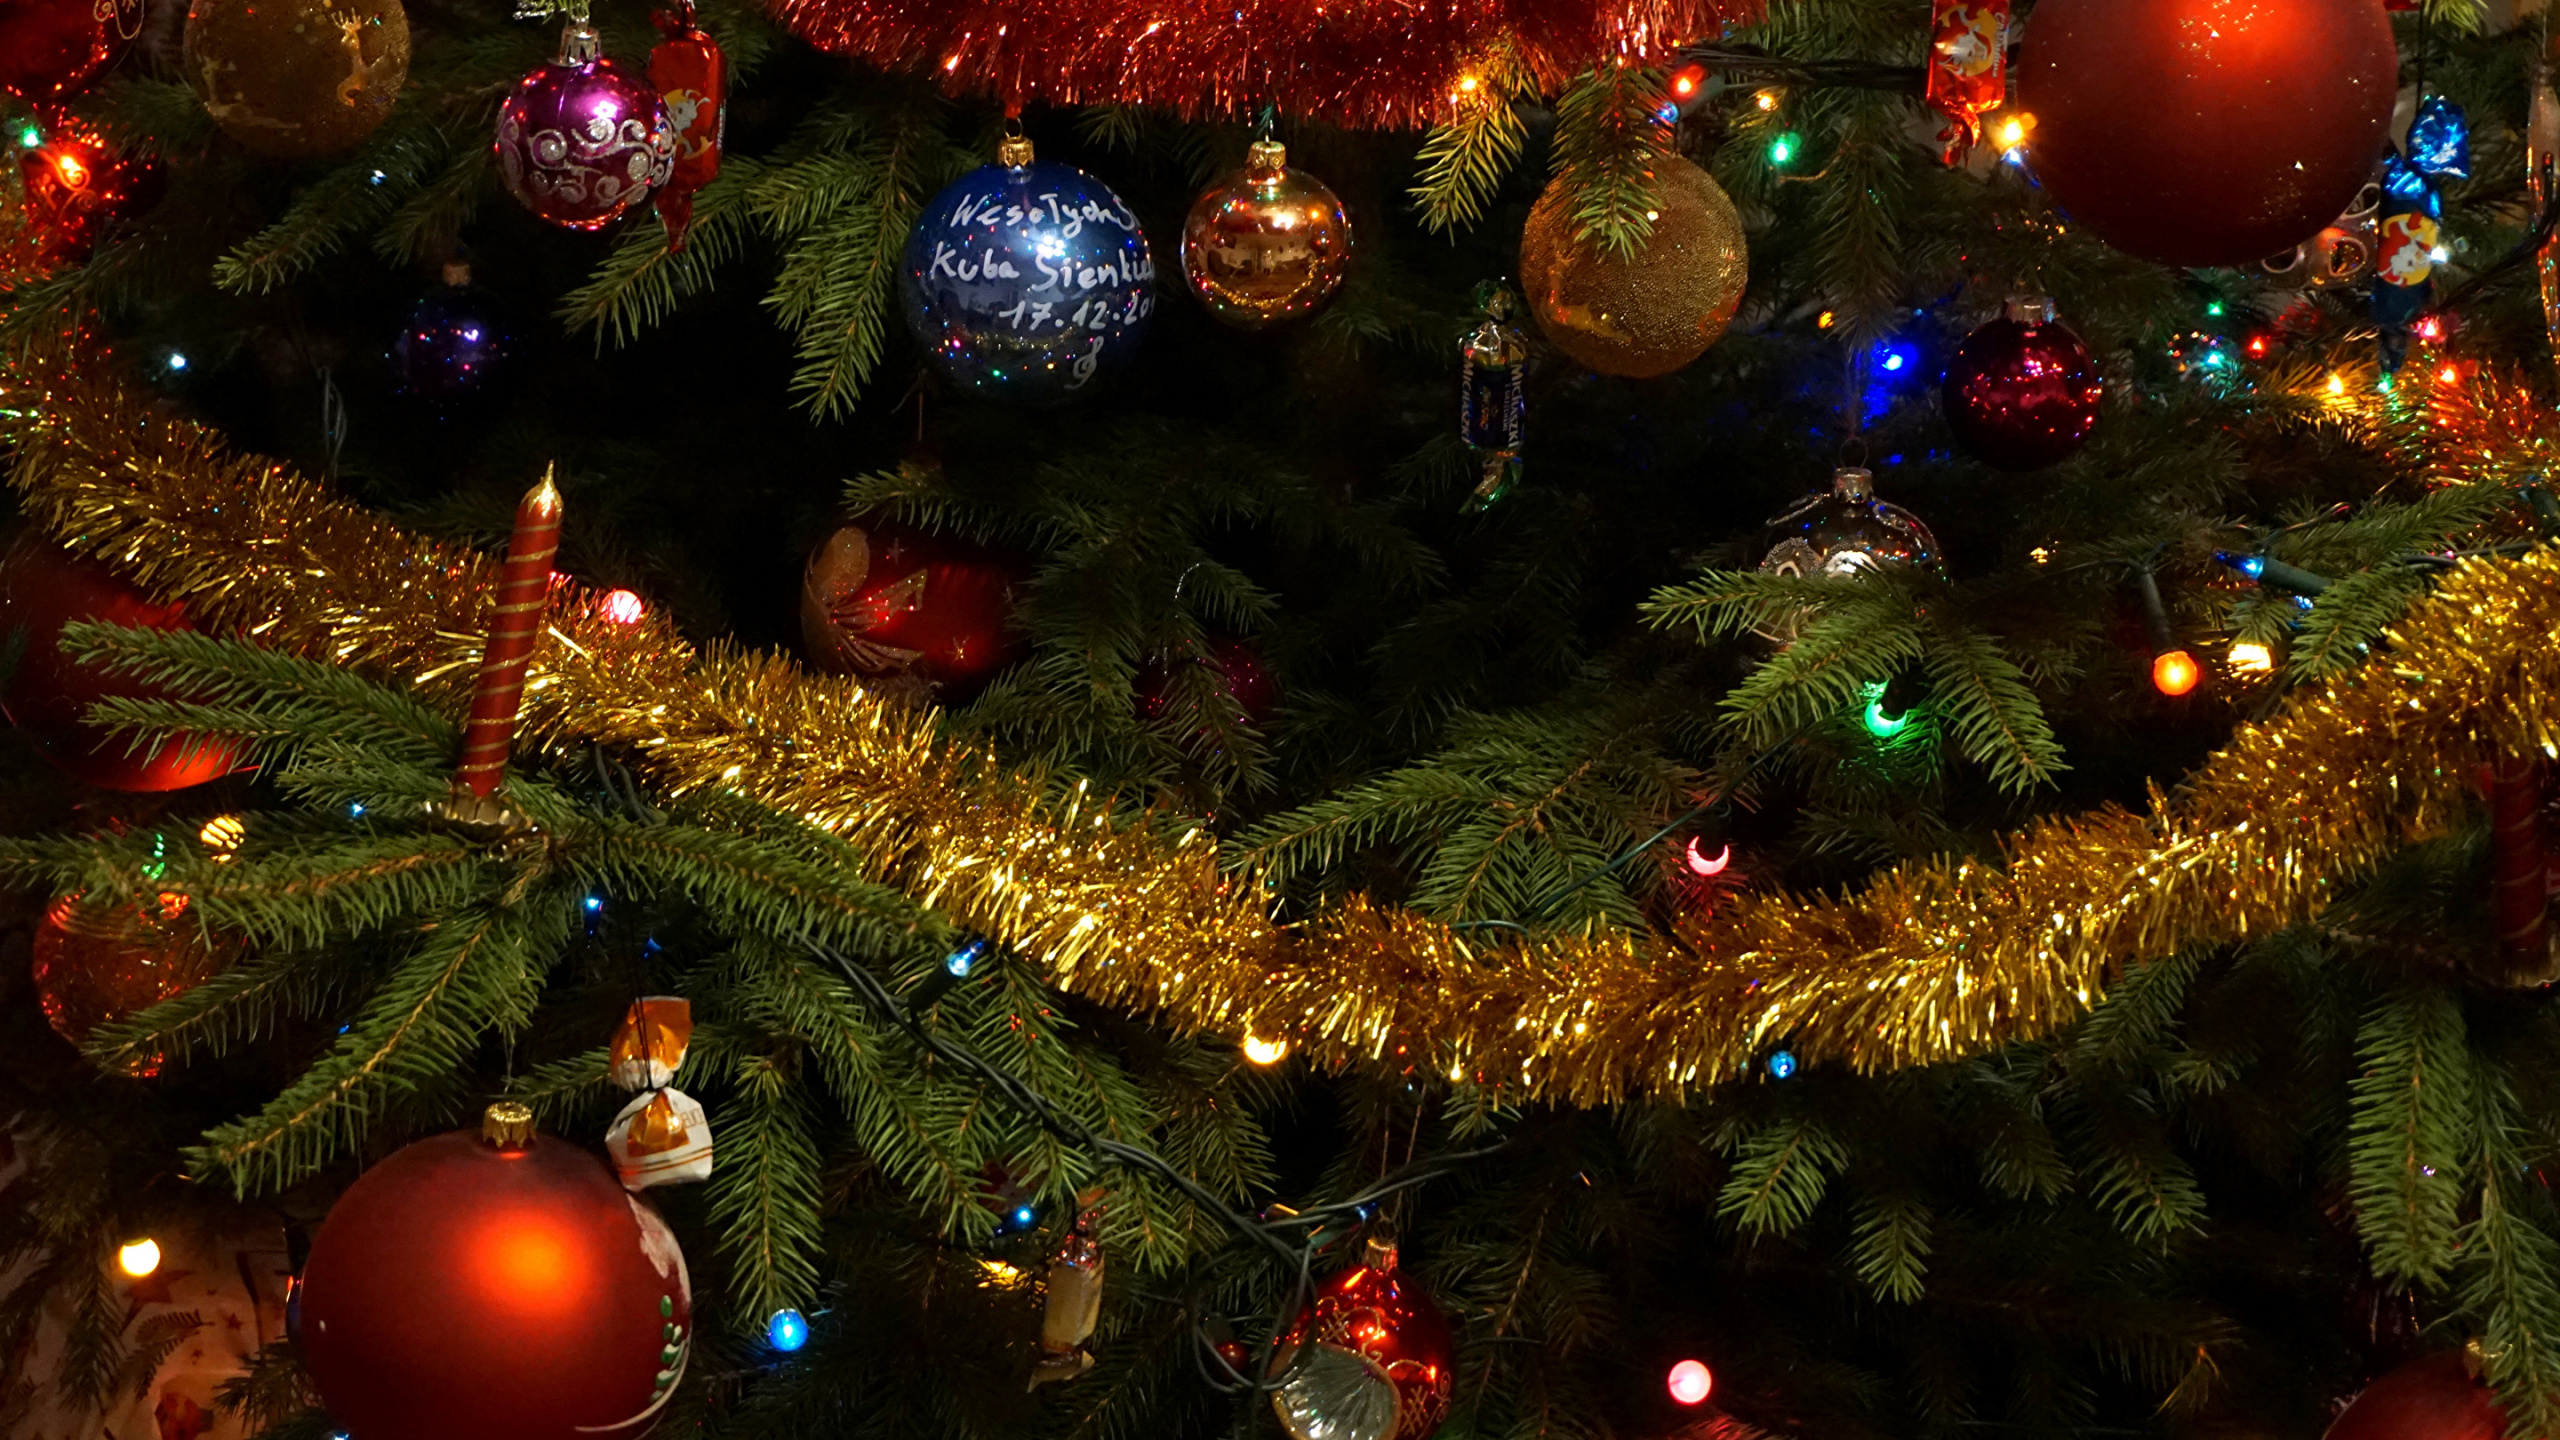 Le Jour De Noël, Les Lumières de Noël, Arbre de Noël, Décoration de Noël, Arbre de Noël Artificiel. Wallpaper in 2560x1440 Resolution